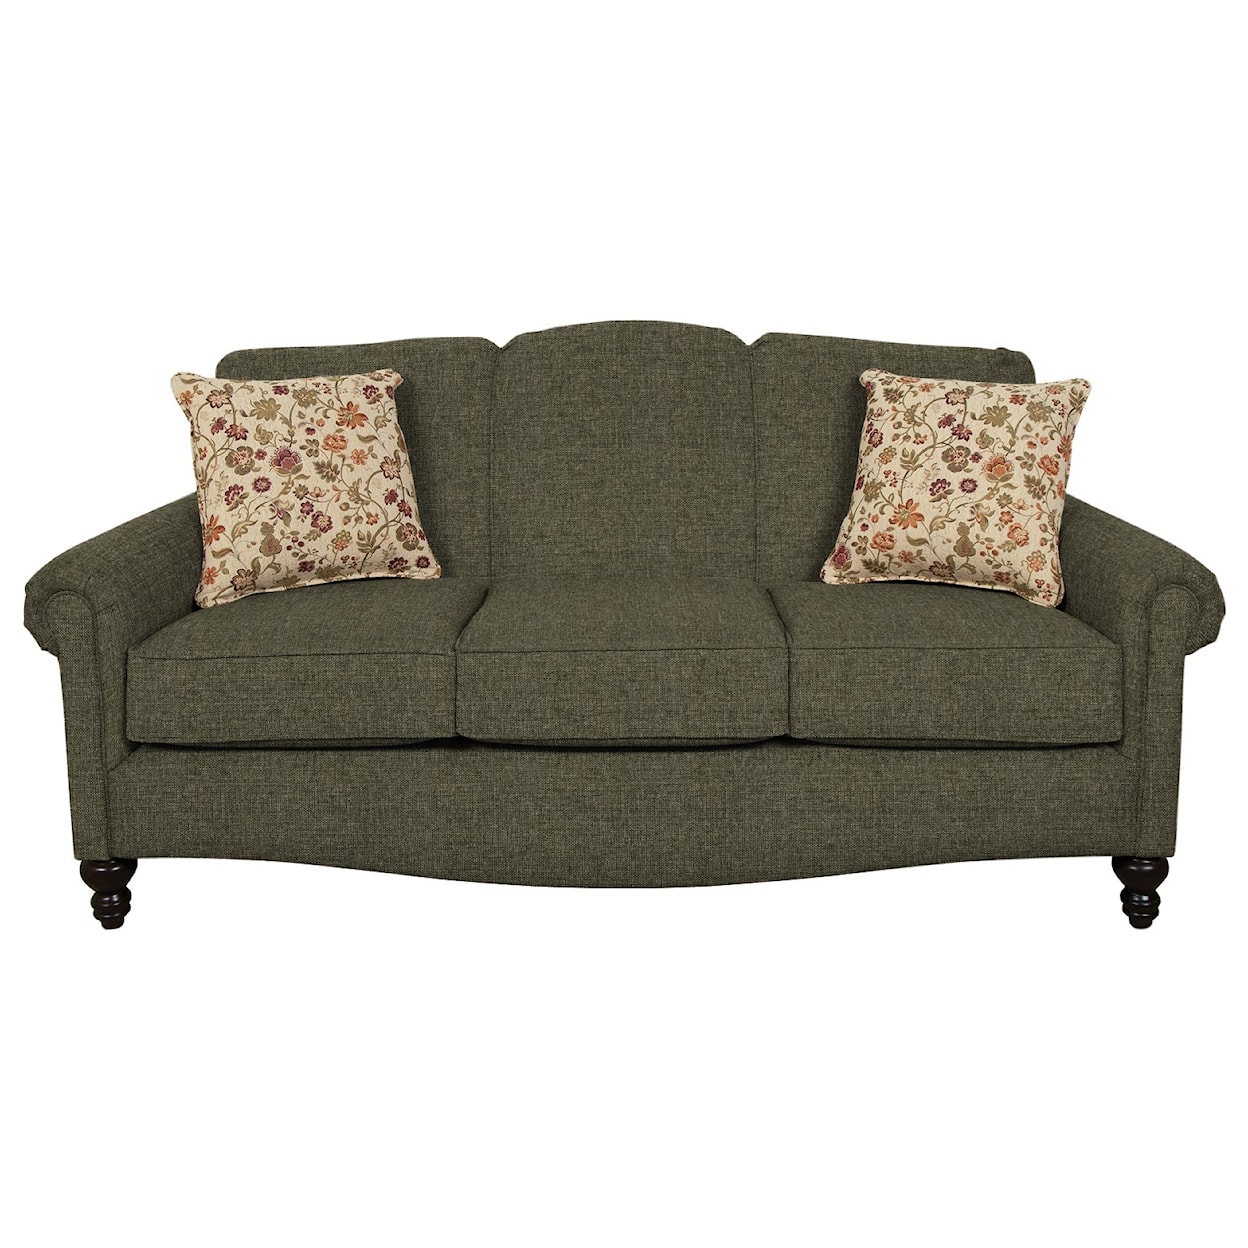 England 630 Series Upholstered Sofa